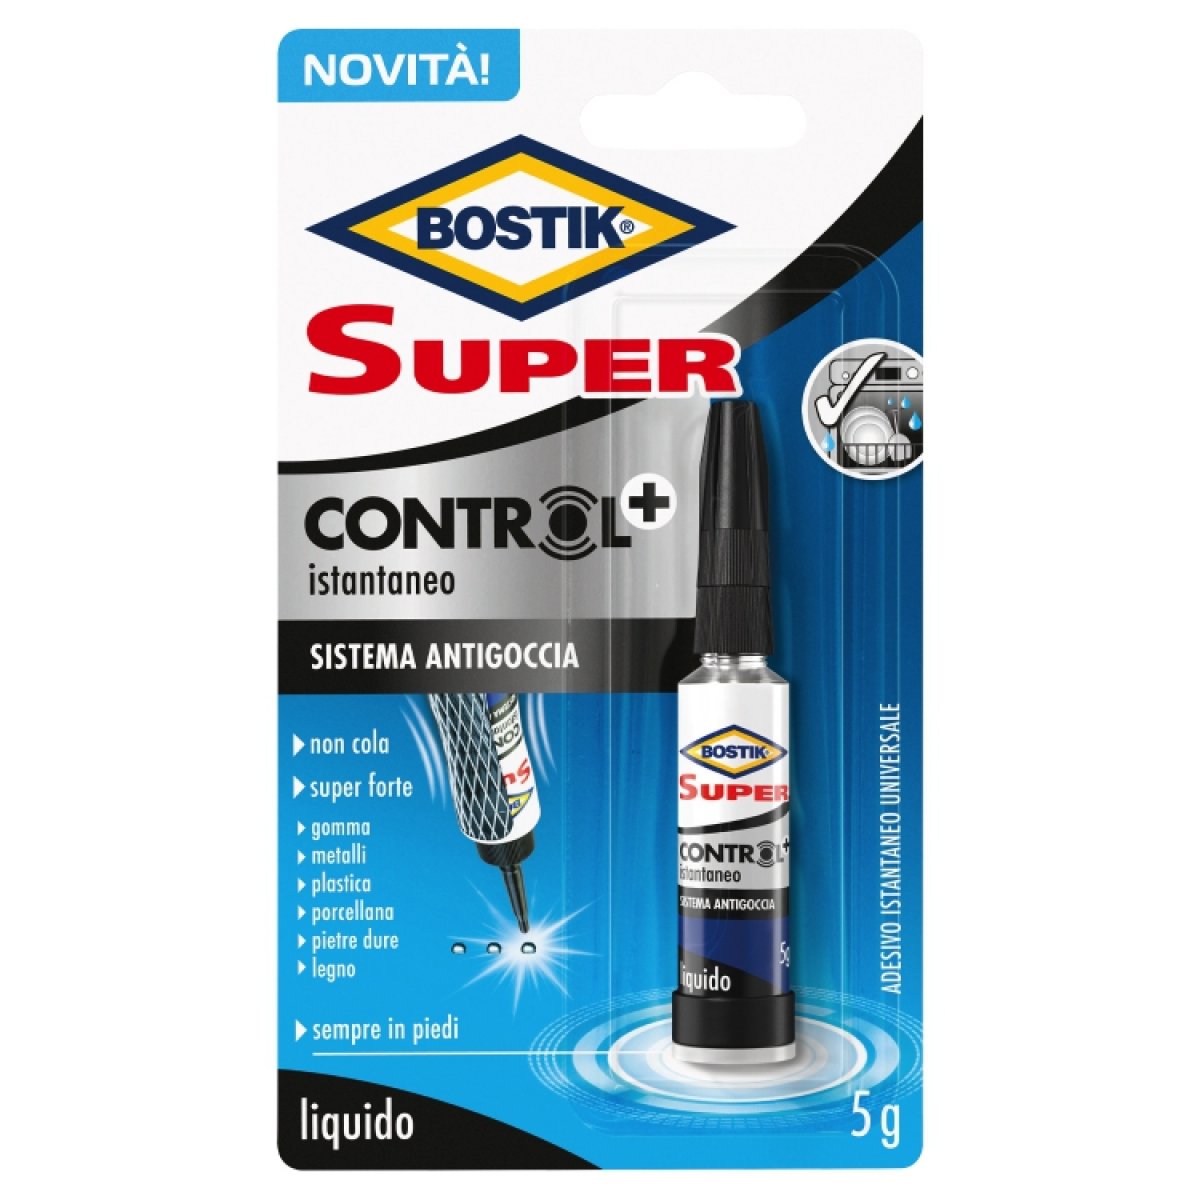 Adesivo Bostik Super CONTROL+ è un adesivo liquido istantaneo e super forte in uno stabile contenitore da 5g BOSTIK